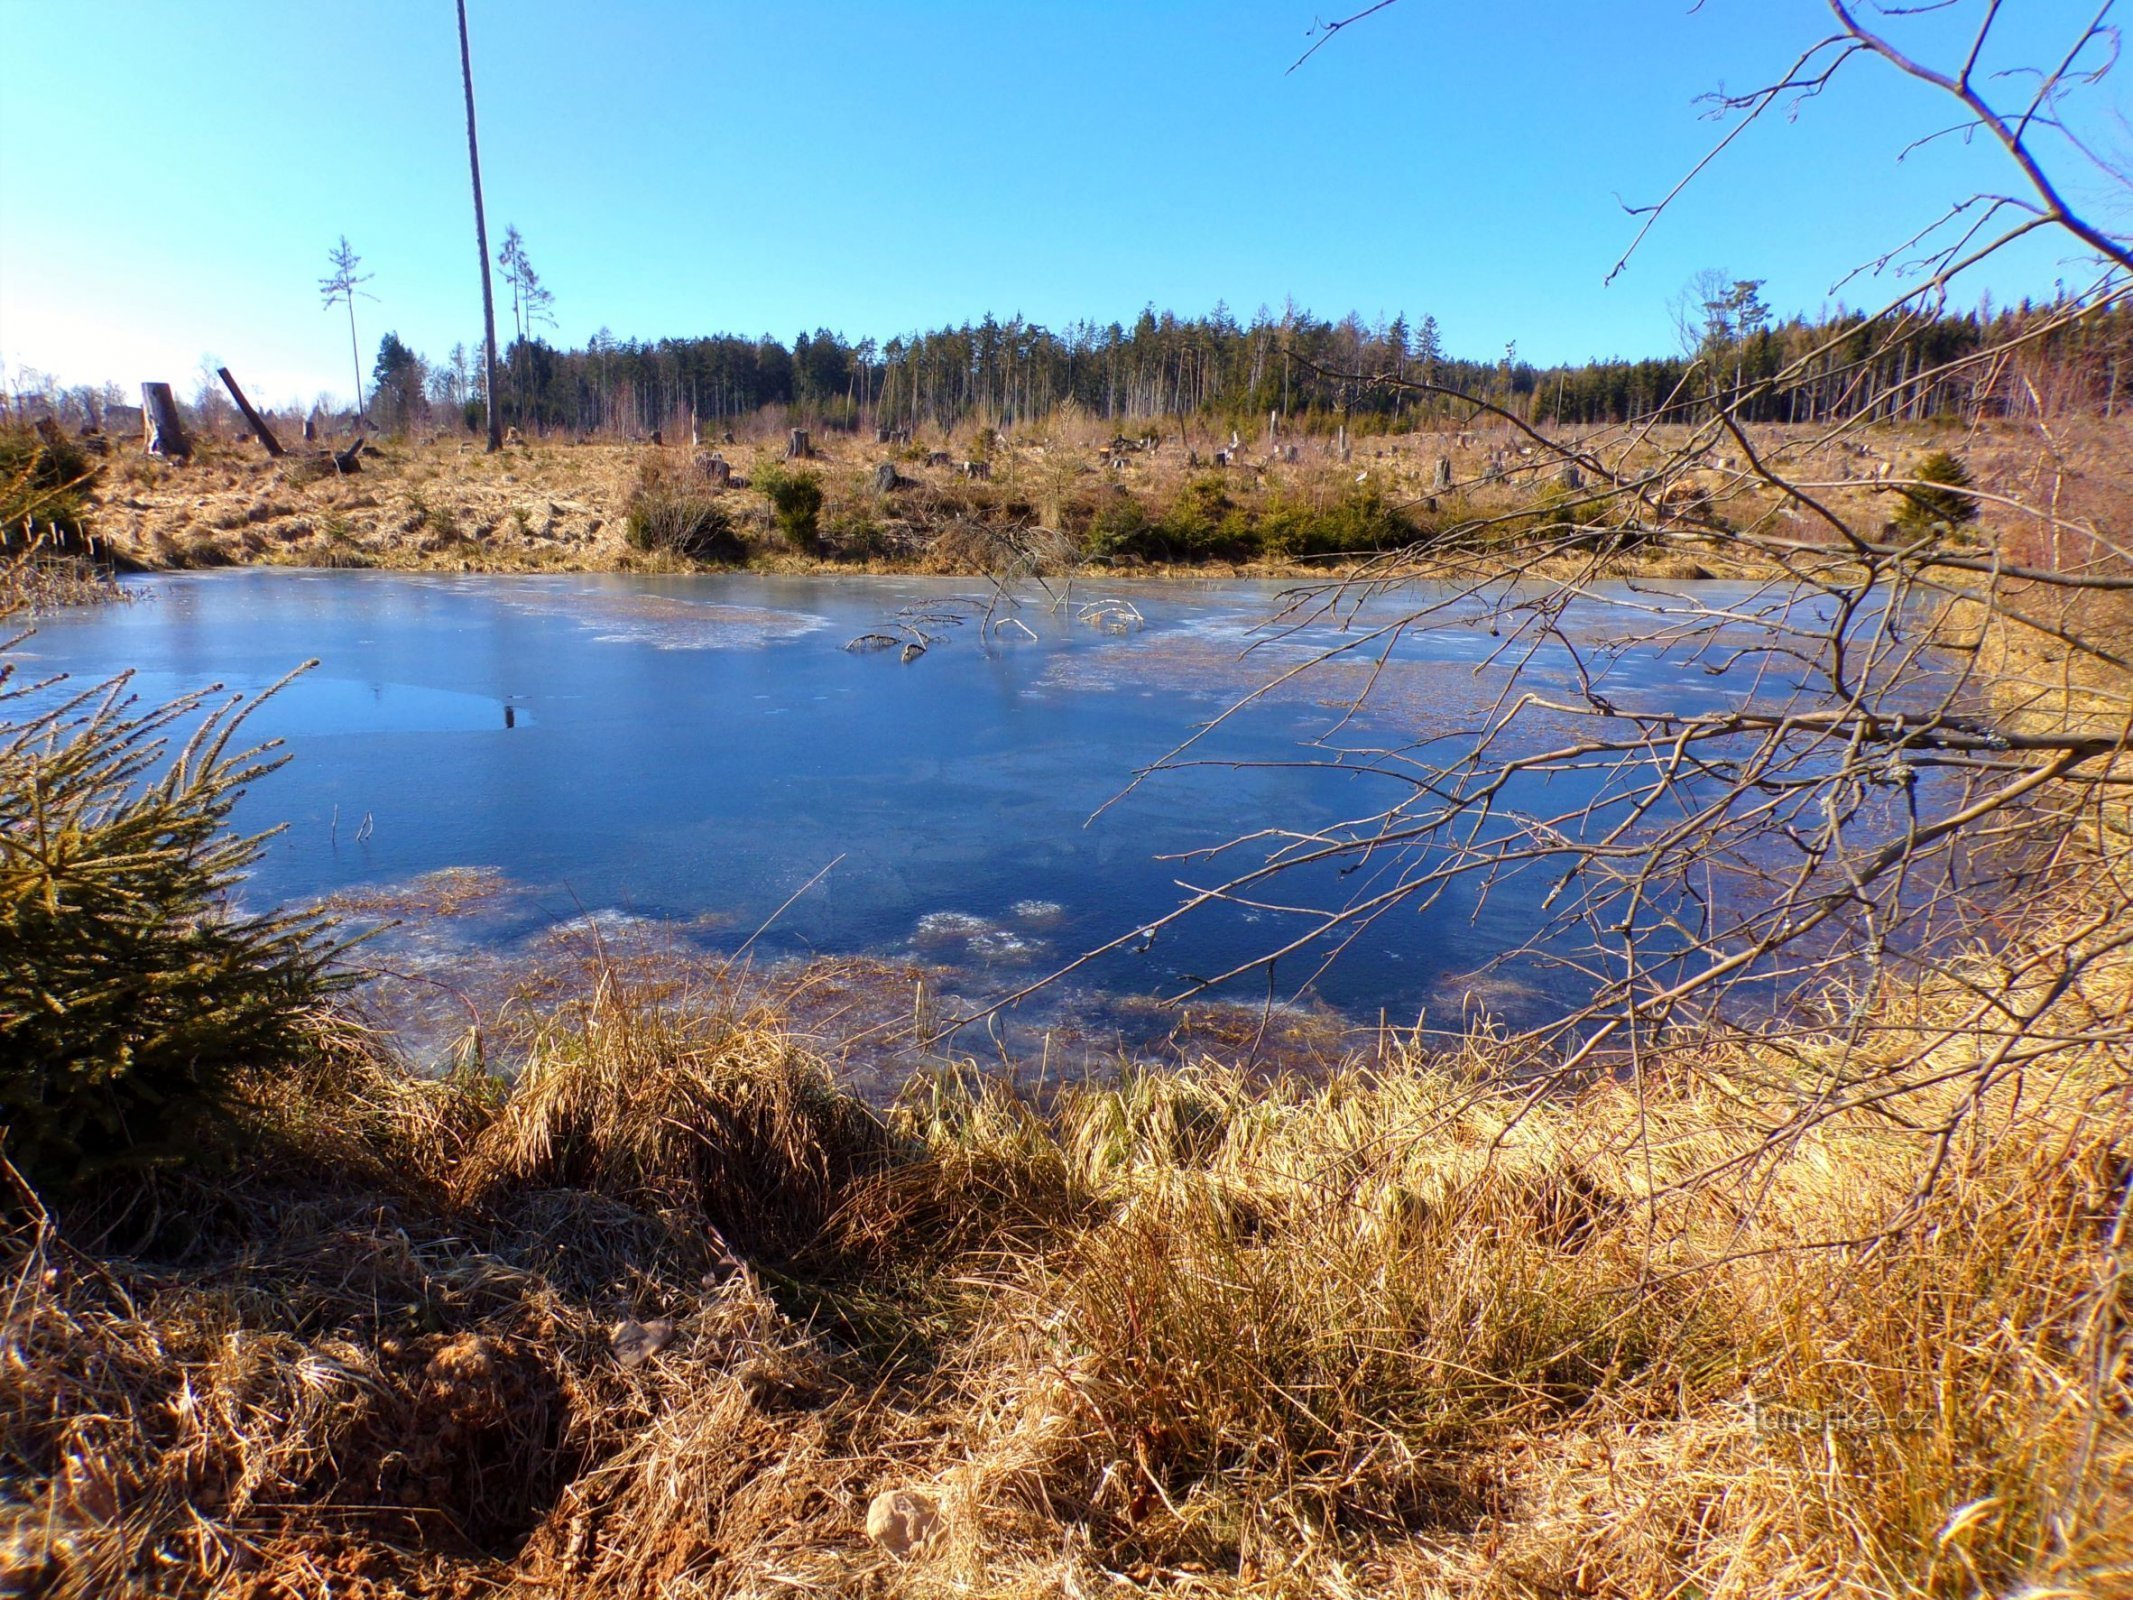 Šumsko jezerce iznad jezerca Chmelařým (Mezilečí, 8.3.2022.)